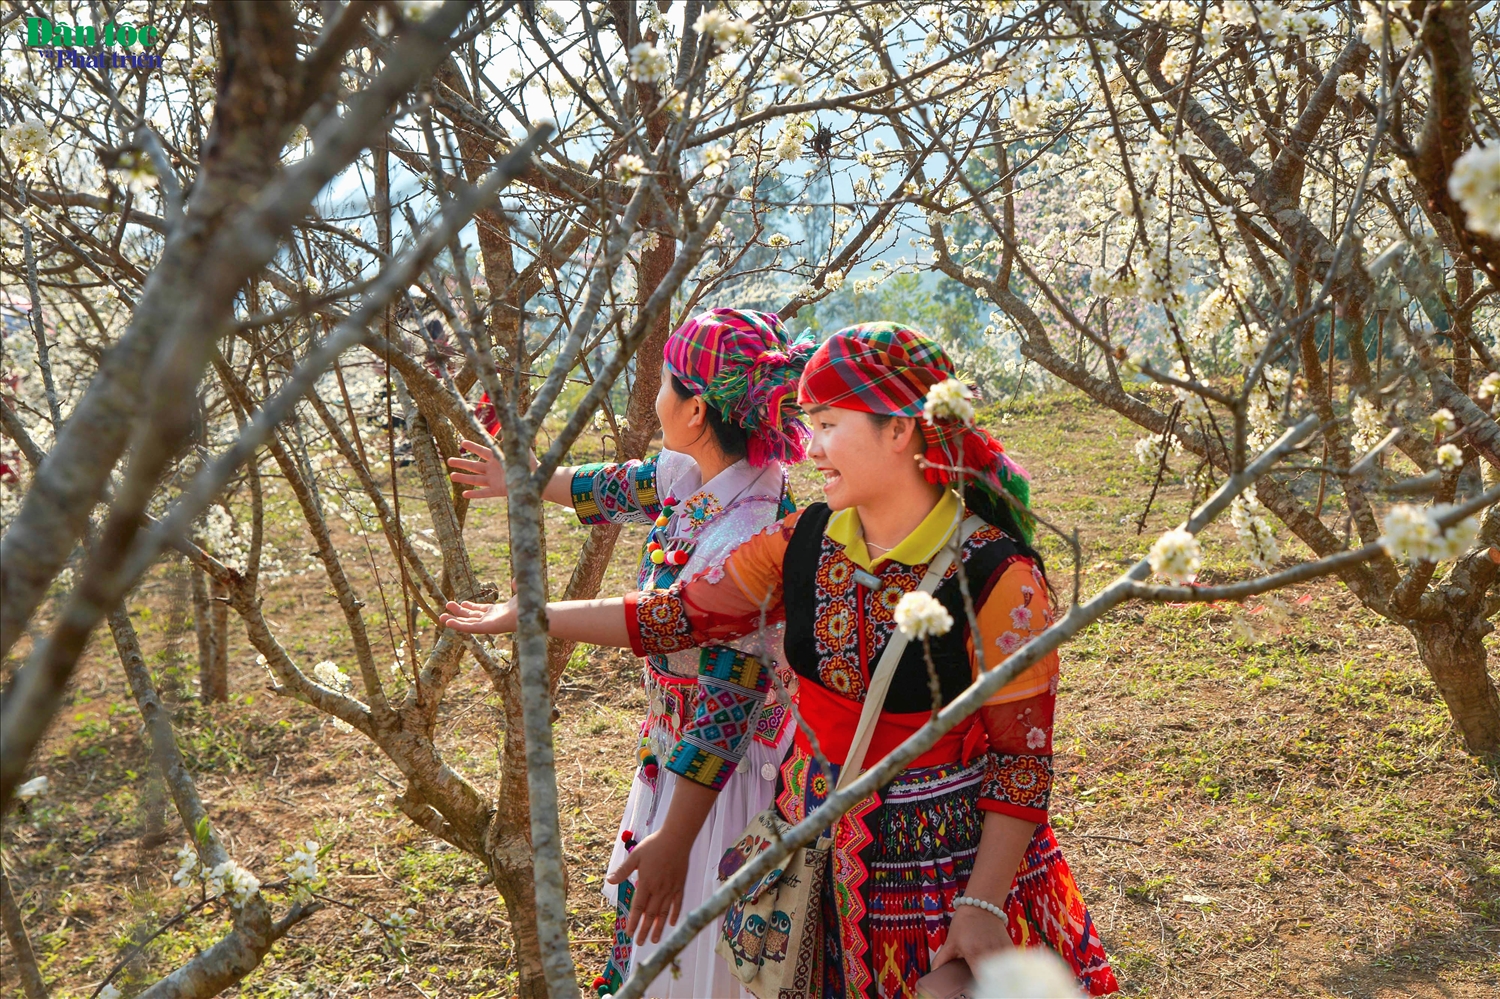 Hình ảnh các cô gái Mông trong trang phục truyền thống giàu bản sắc, thân thiện, mến khách là điểm nhấn thu hút du khách bốn phương dến trải nghiệm trong dịp đầu xuân